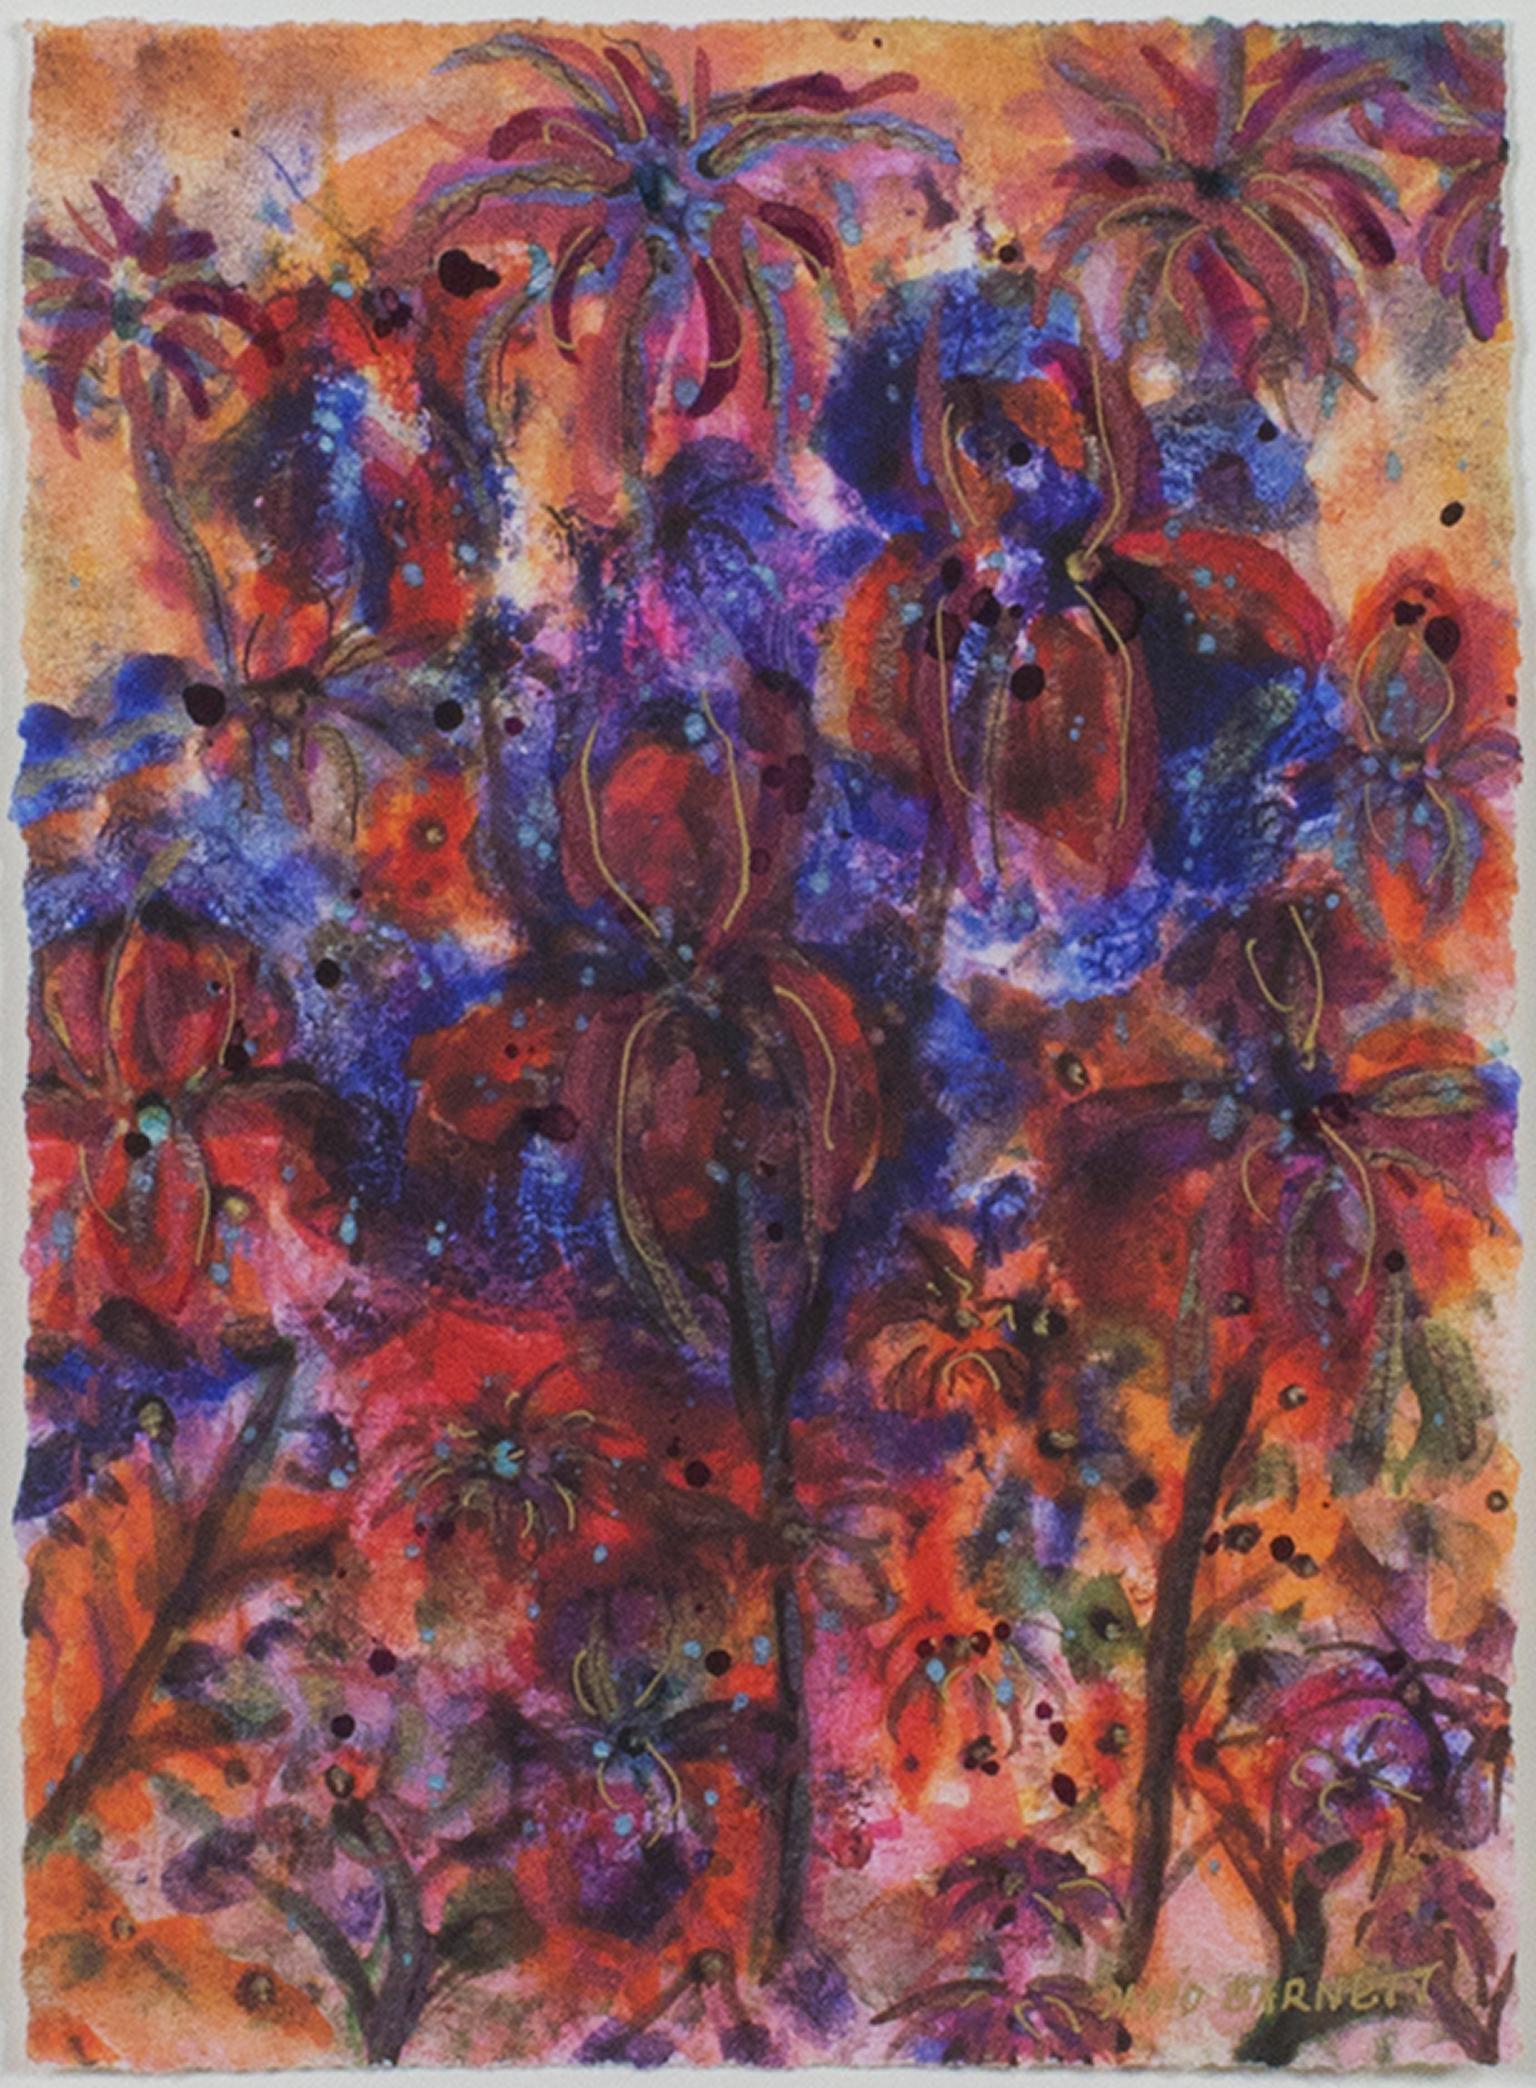 "Sunlit Tropical Orchids" ist ein Original-Mixed-Media-Werk von David Barnett, signiert unten rechts.  Die ausdrucksstarken Pinselstriche fügen sich zu leuchtend roten Orchideen auf einem Hintergrund von tiefem Blau-Violett zusammen. Kleinere Blüten